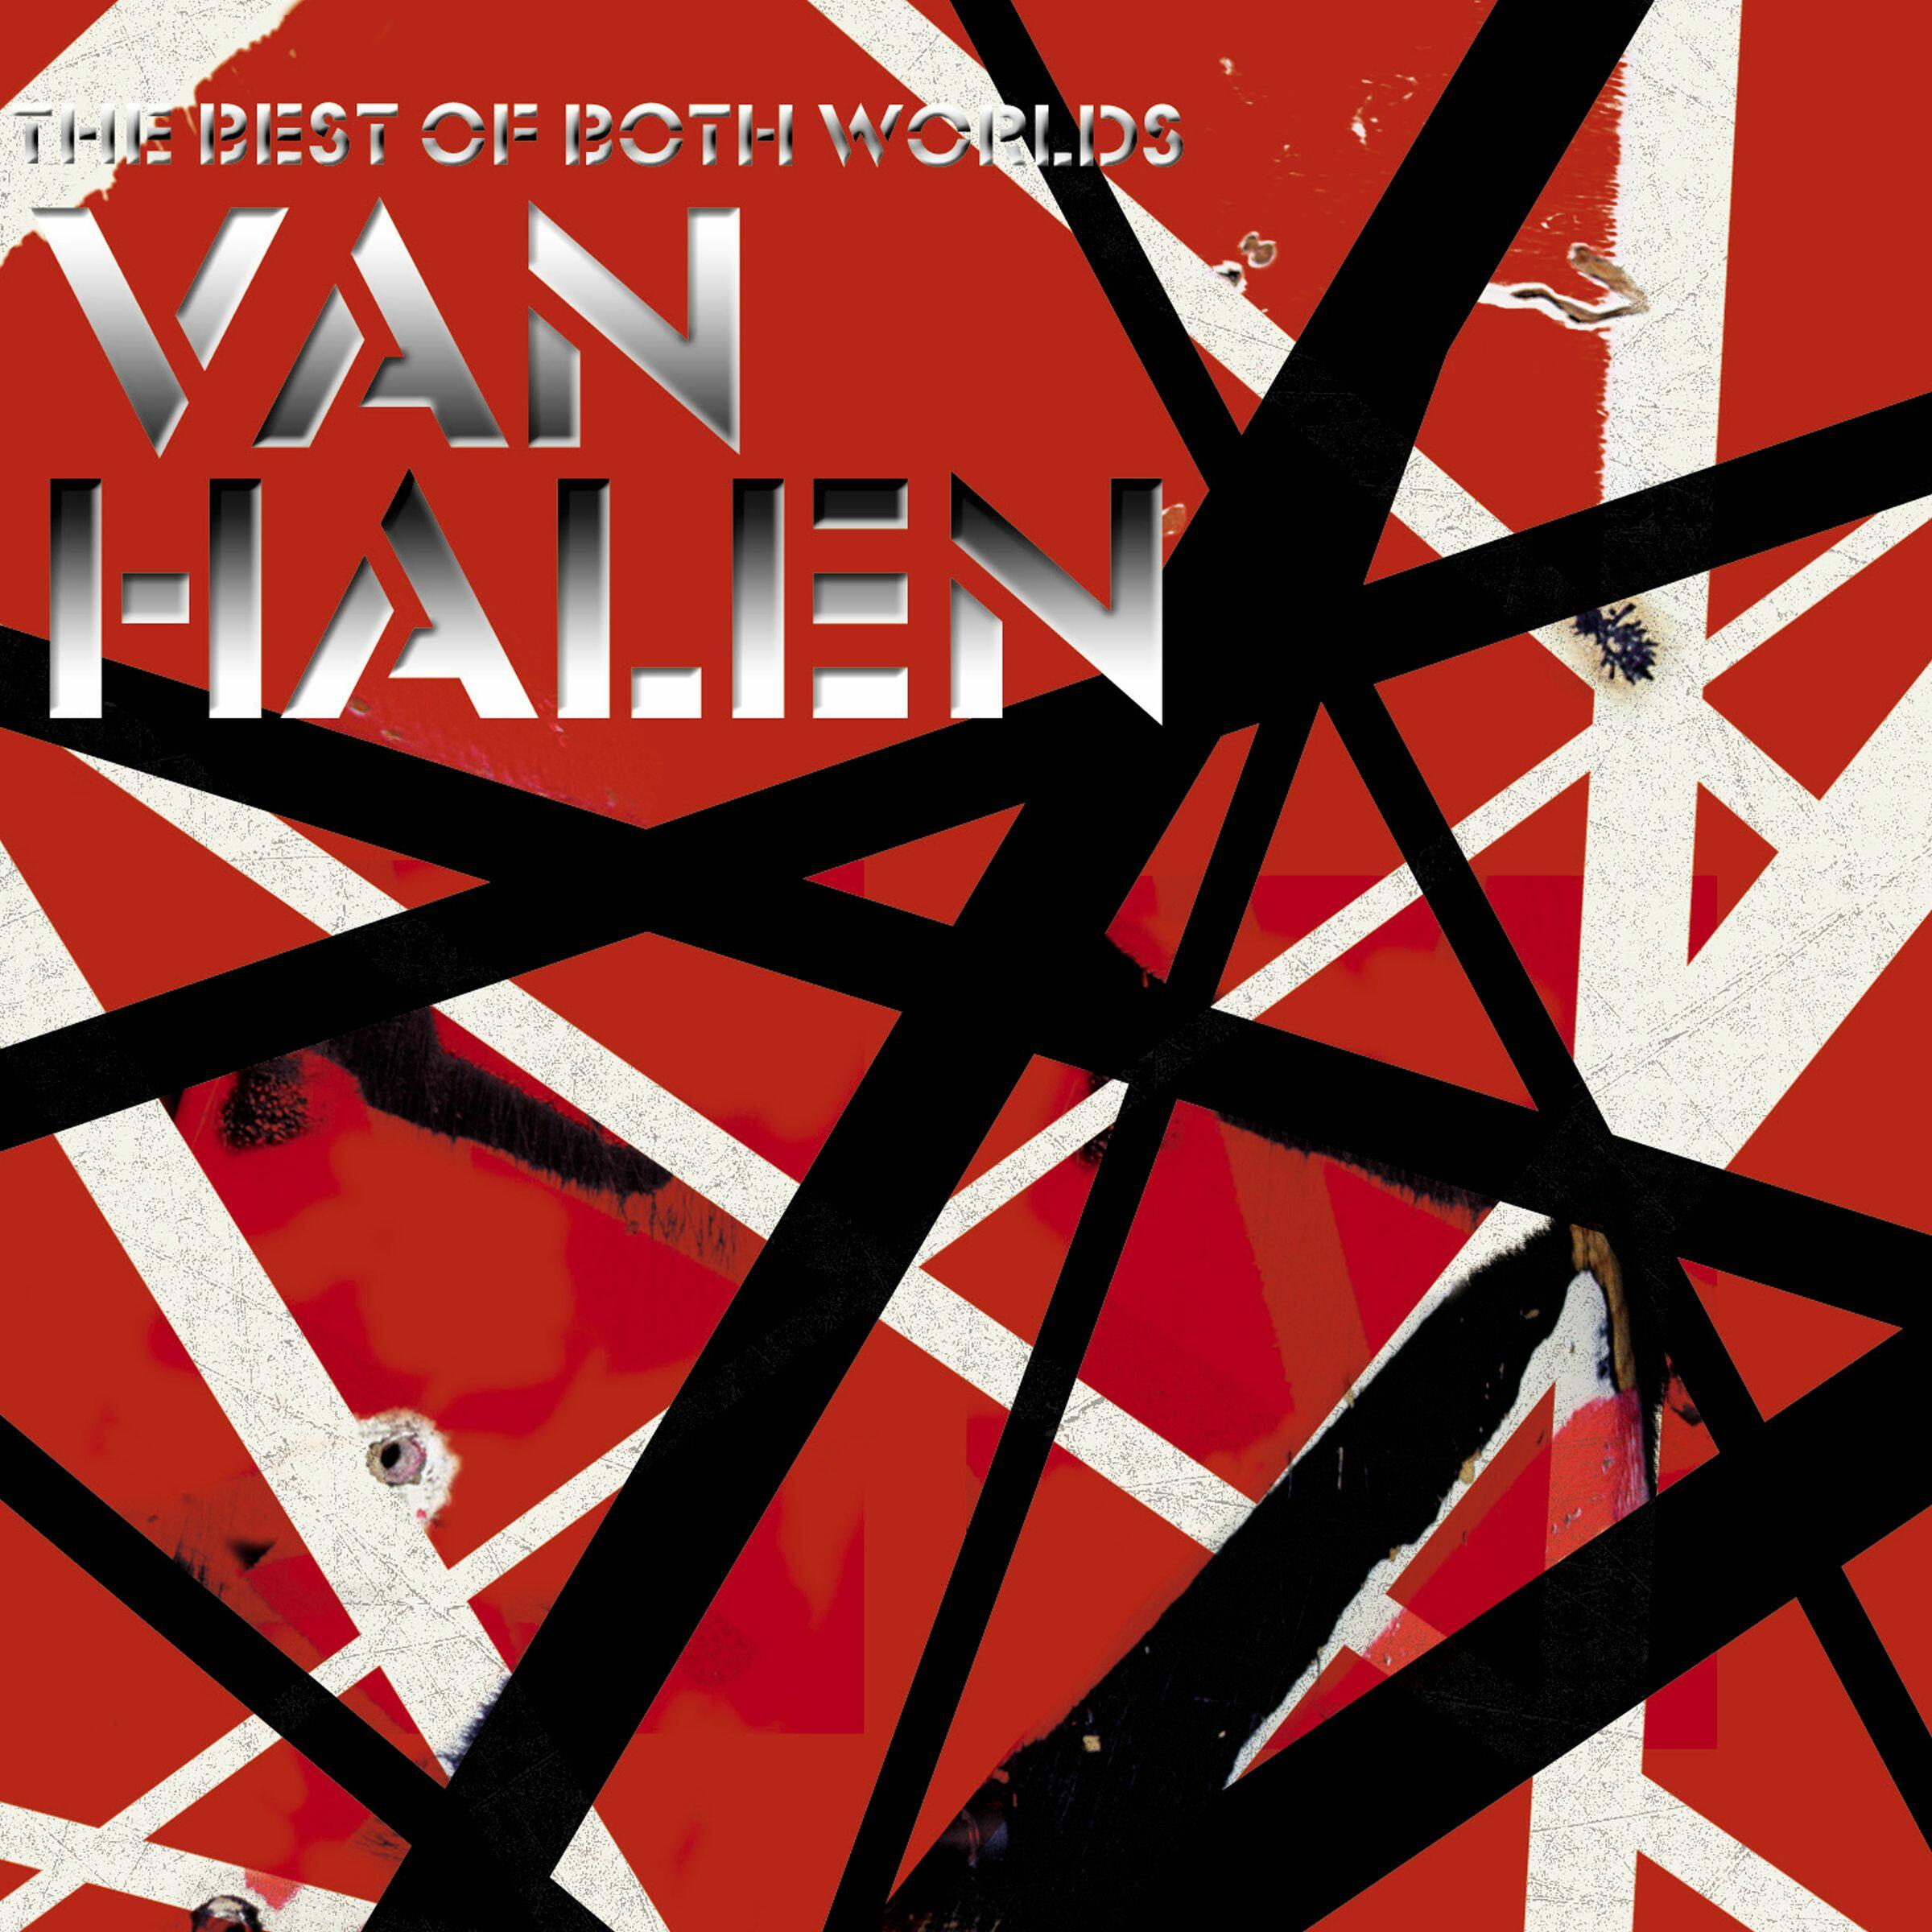 Listen Free to Van Halen - The Best of Both Worlds Radio on iHeartRadio | iHeartRadio